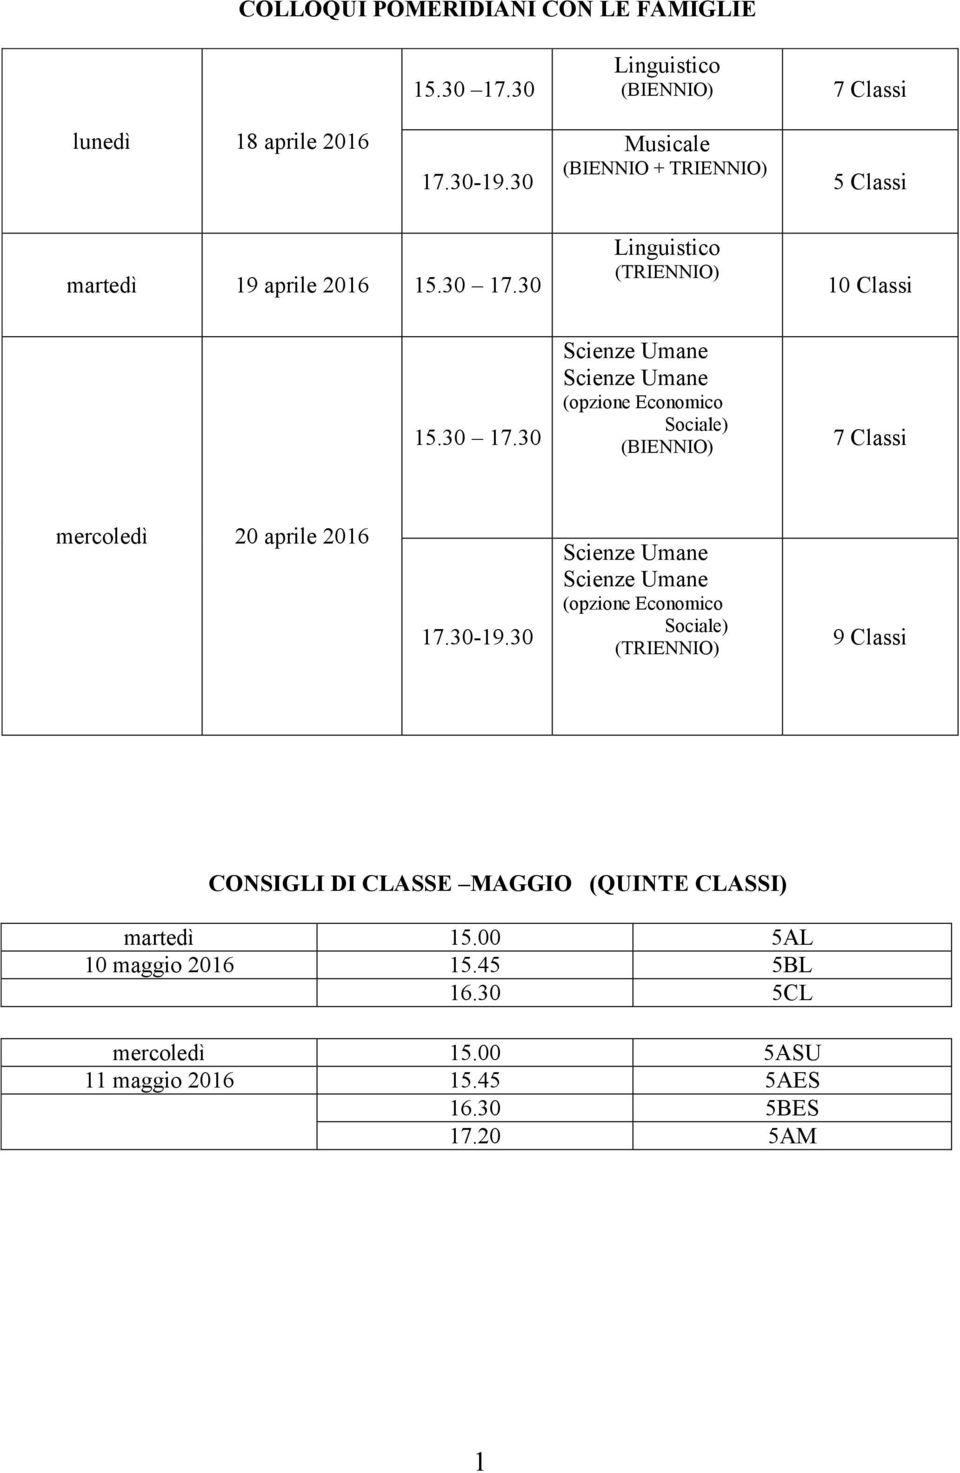 30 Linguistico (TRIENNIO) 10 Classi 15.30 17.30 (opzione Economico Sociale) (BIENNIO) 7 Classi mercoledì 20 aprile 2016 17.30-19.